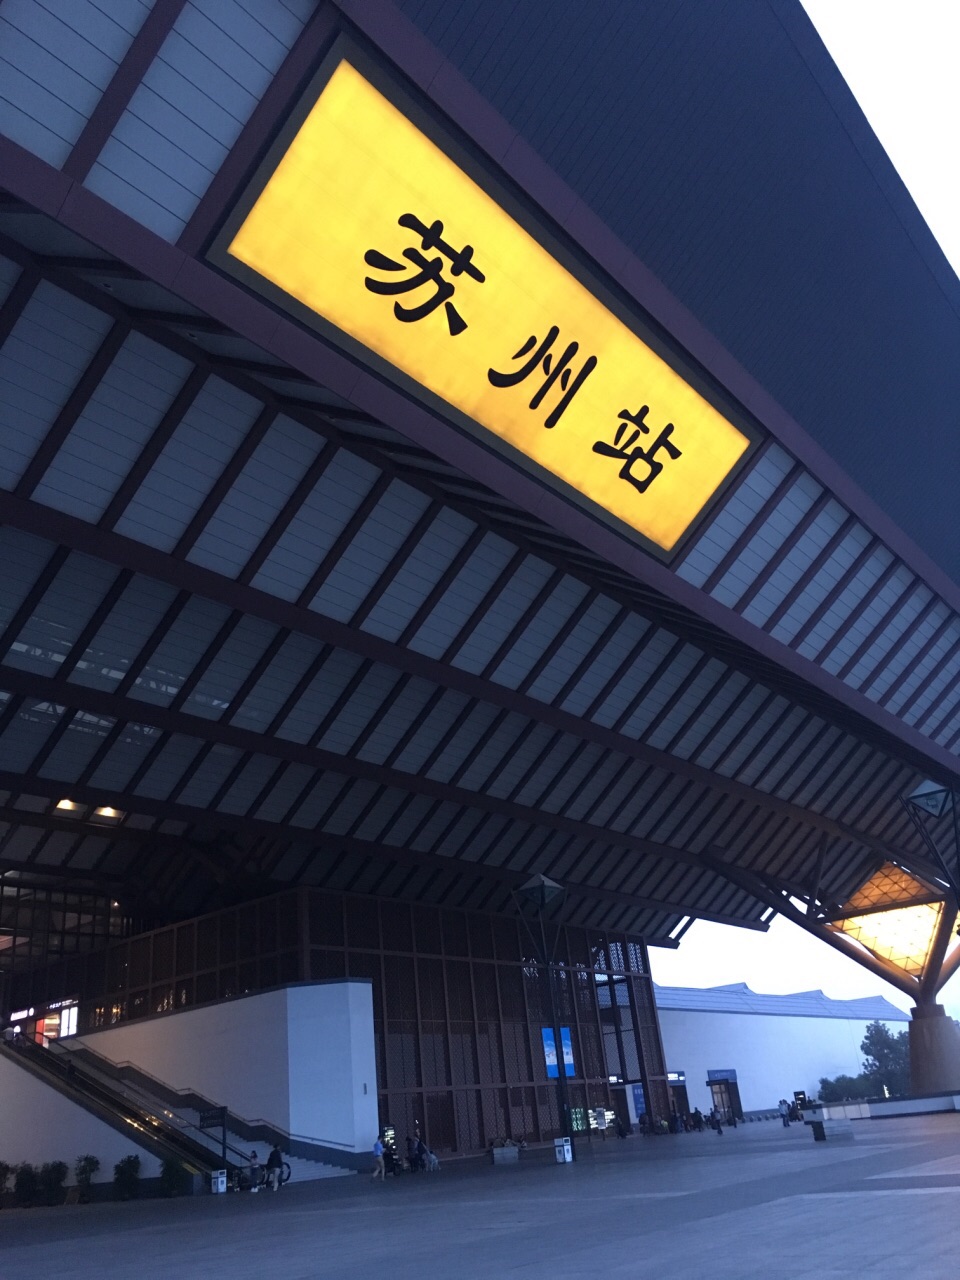 苏州高铁站照片图片